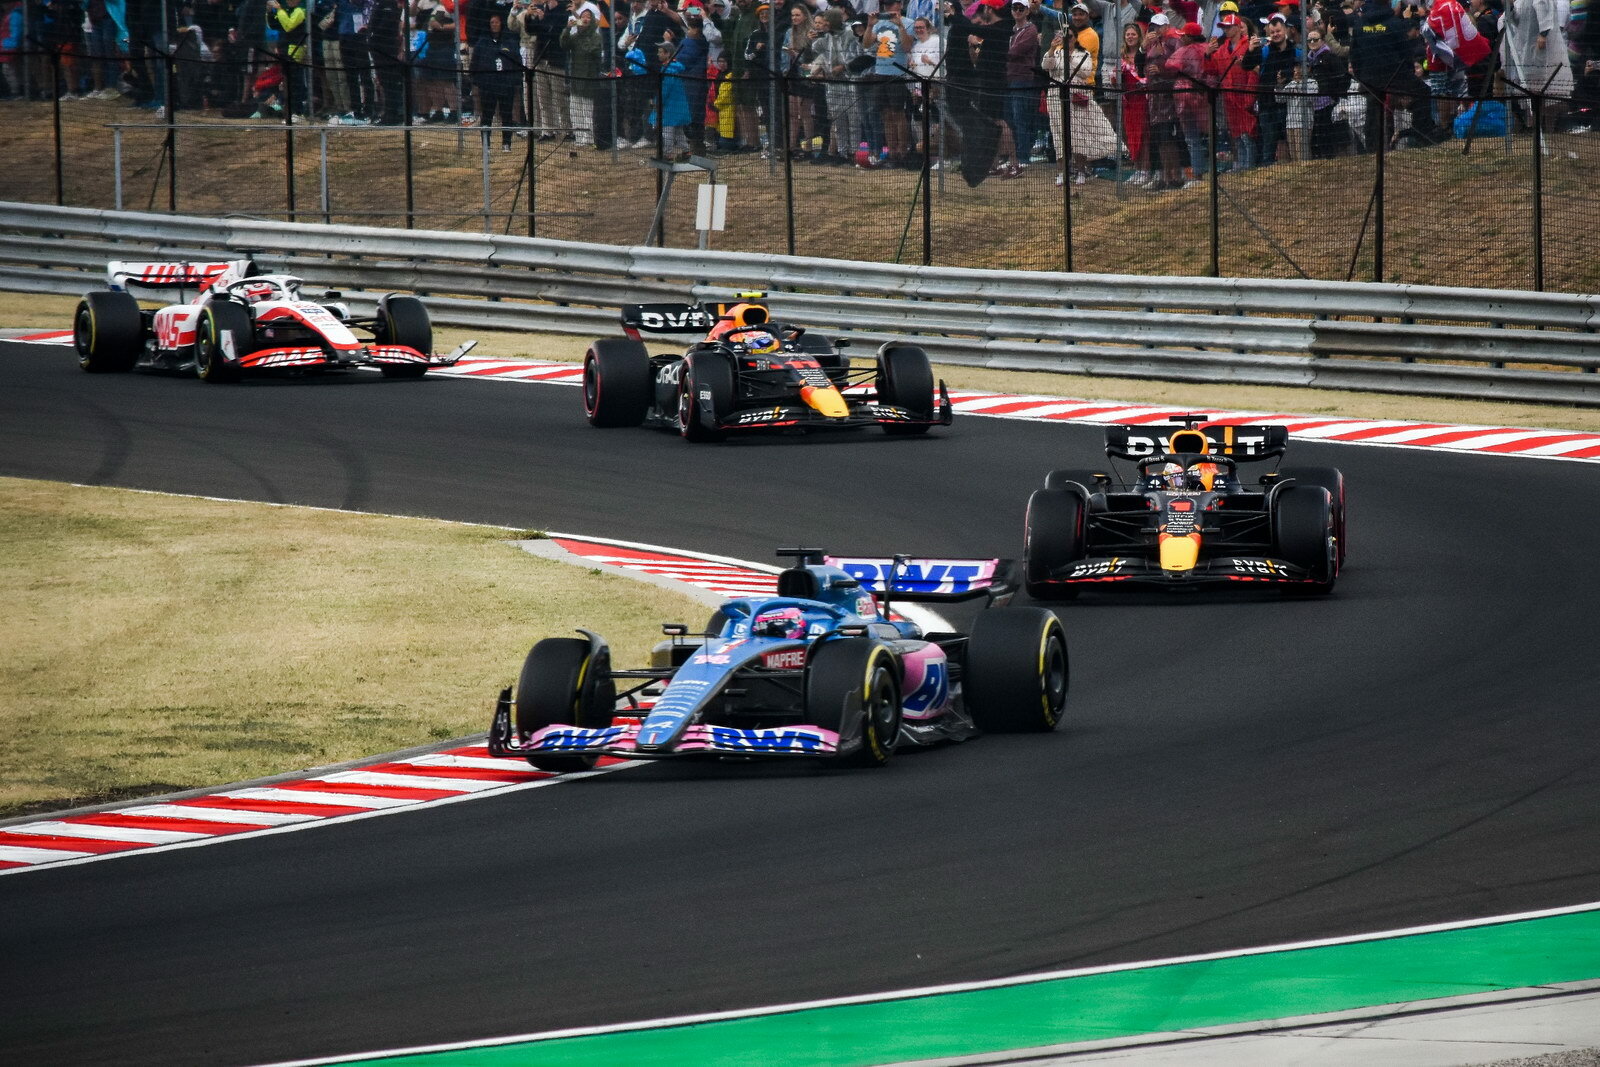 Čtveřice Alonso, Verstappen, Pérez a poslední Magnussen, který má poškozené předním křídlem